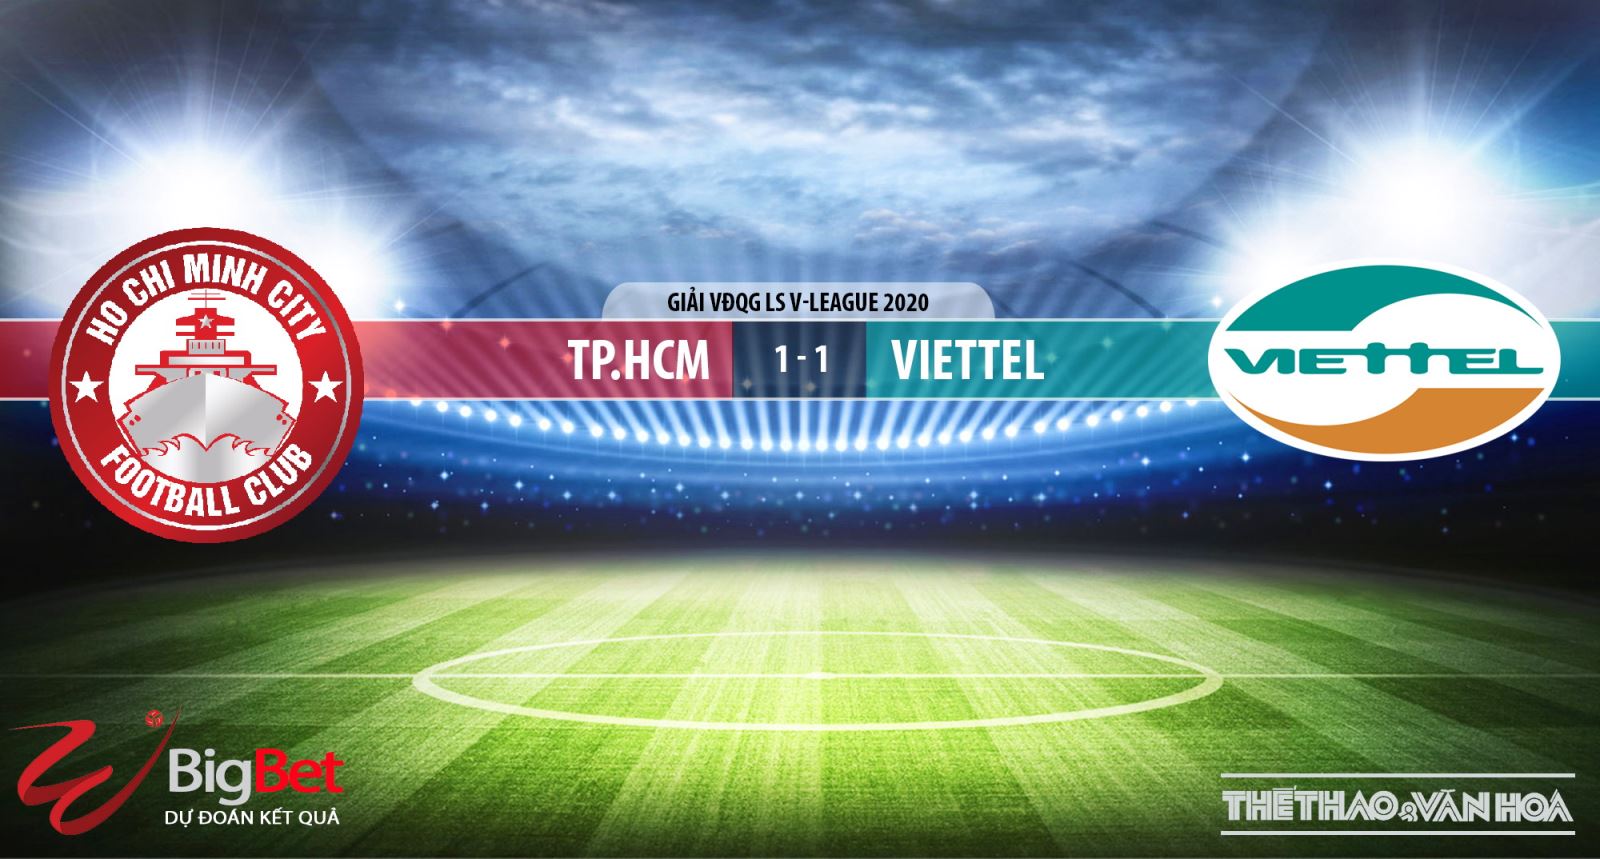 bóng đá, bong da, bong da hom nay, TPHCM vs Viettel, TPHCM đấu với Viettel, Viettel, TPHCM, V-League, dự đoán bóng đá, nhận định bóng đá bóng đá